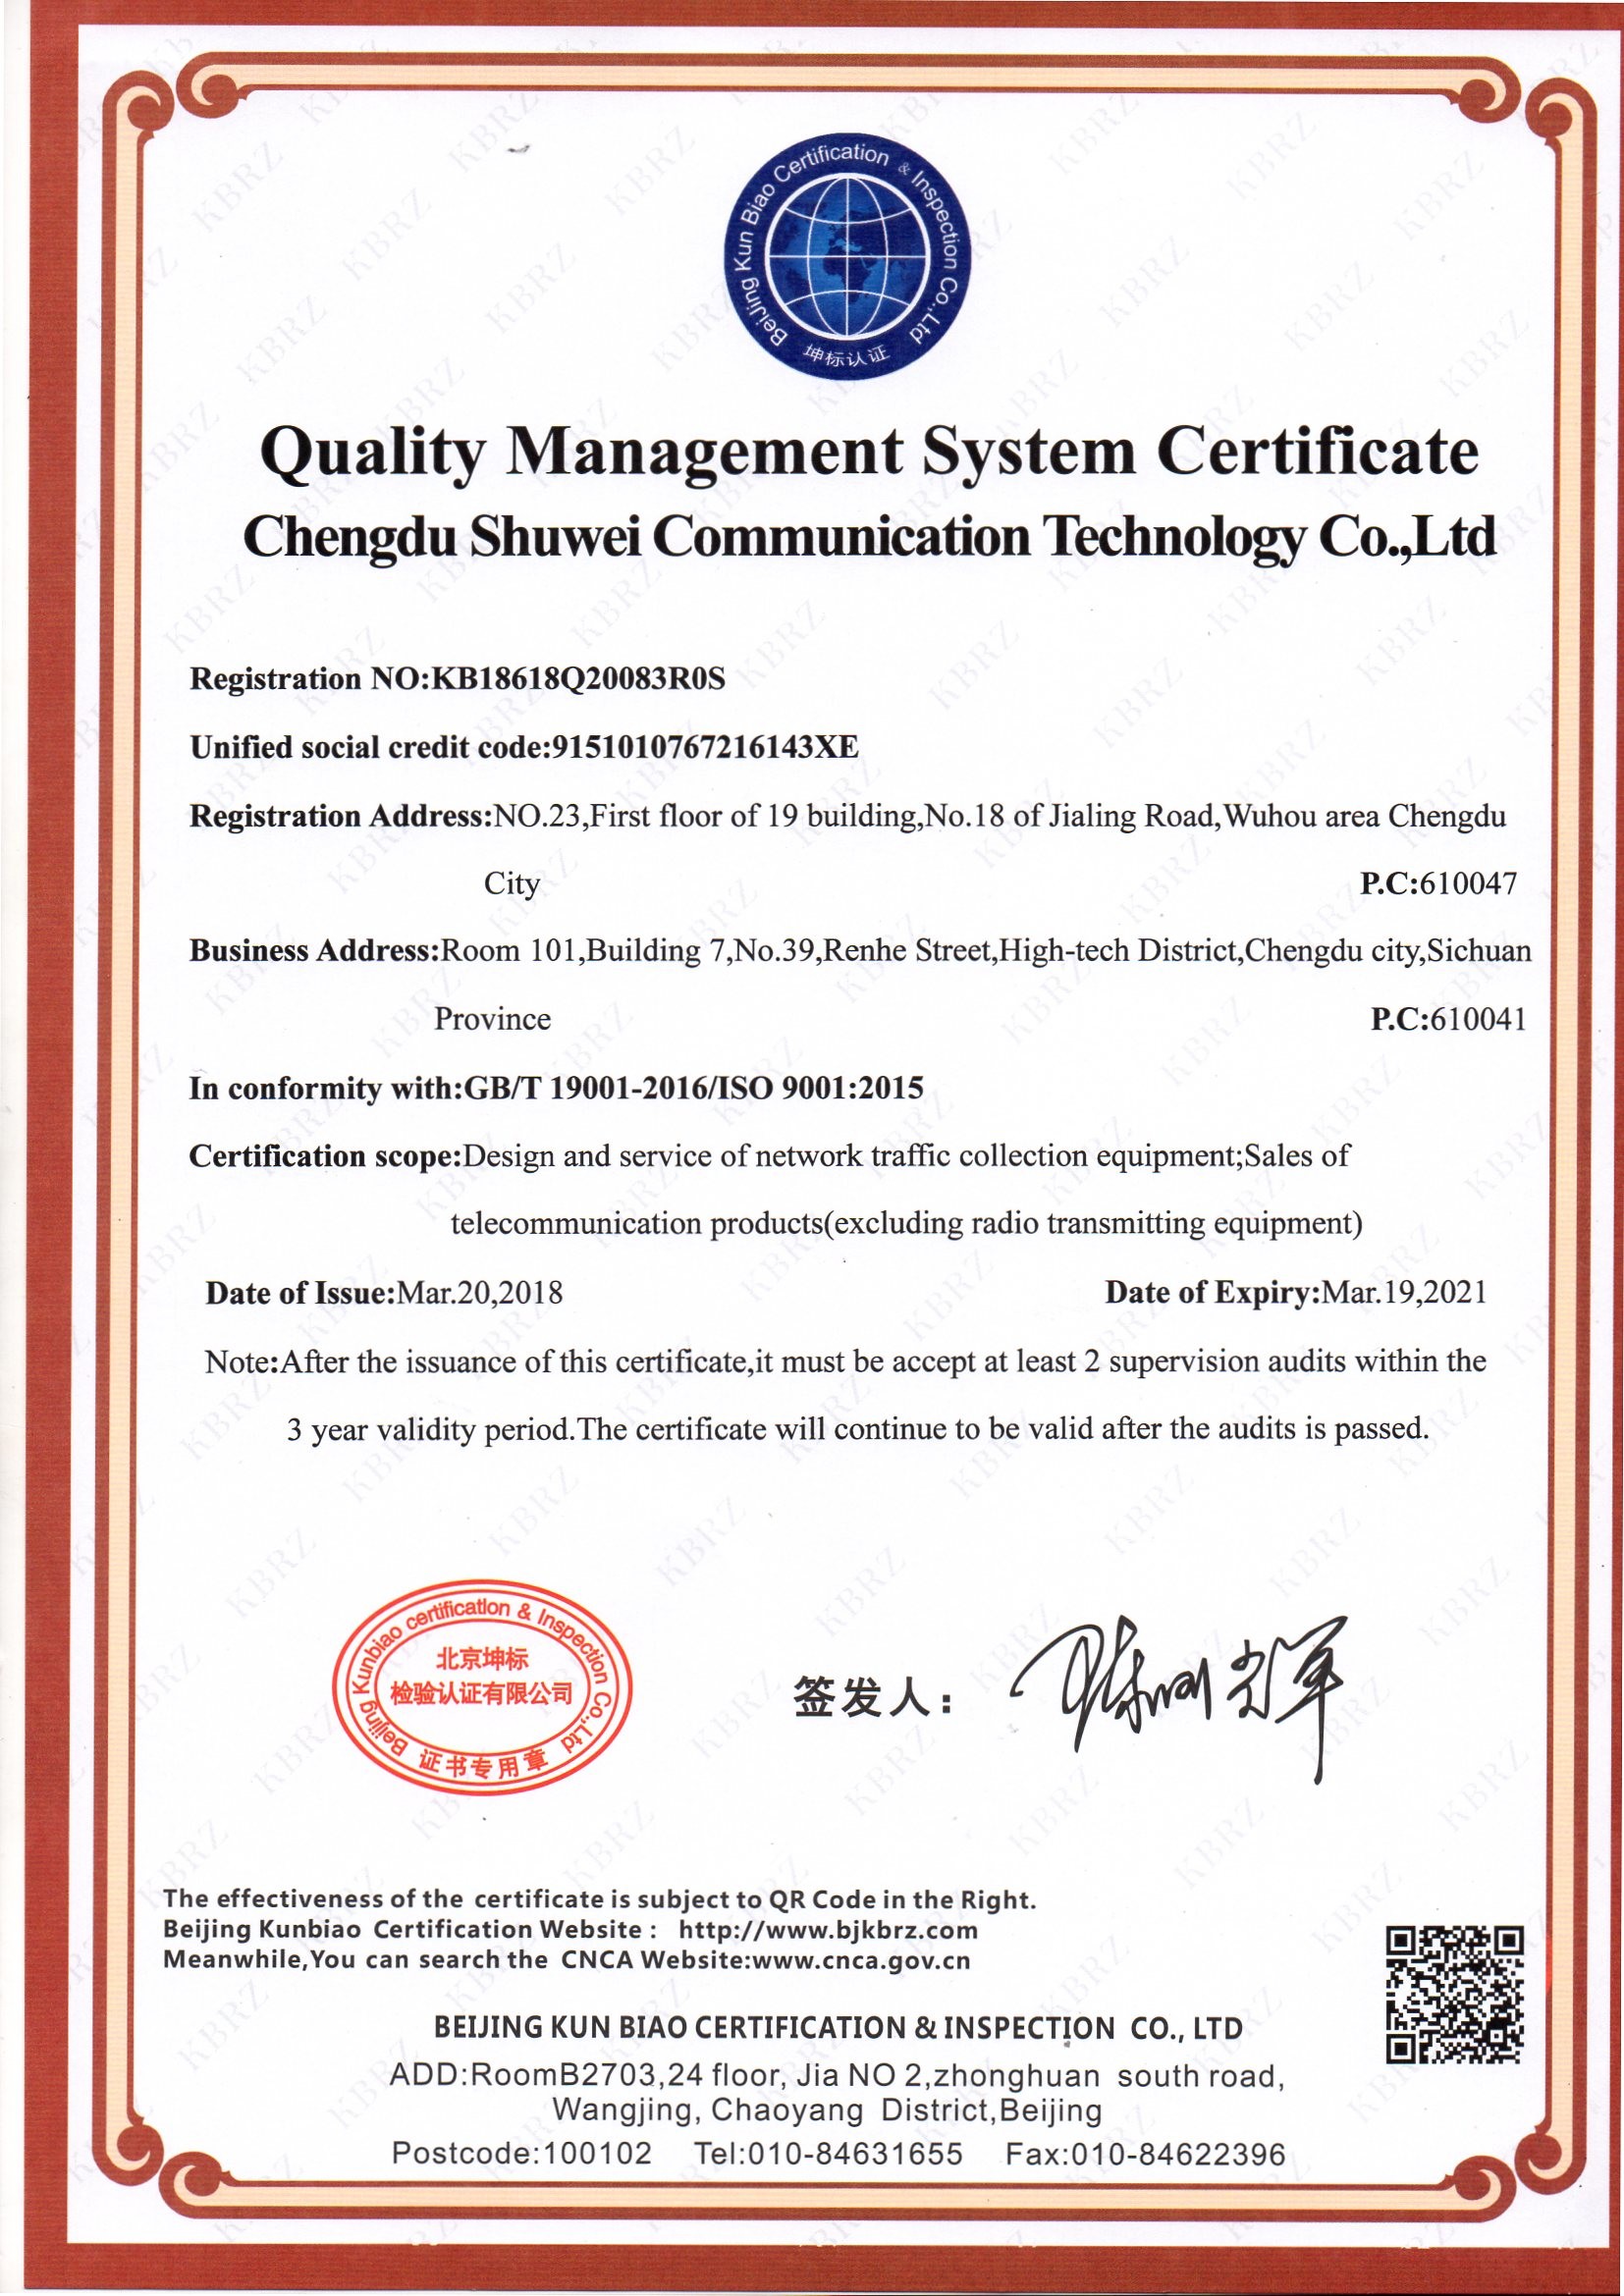 Chine Chengdu Shuwei Communication Technology Co., Ltd. Certifications